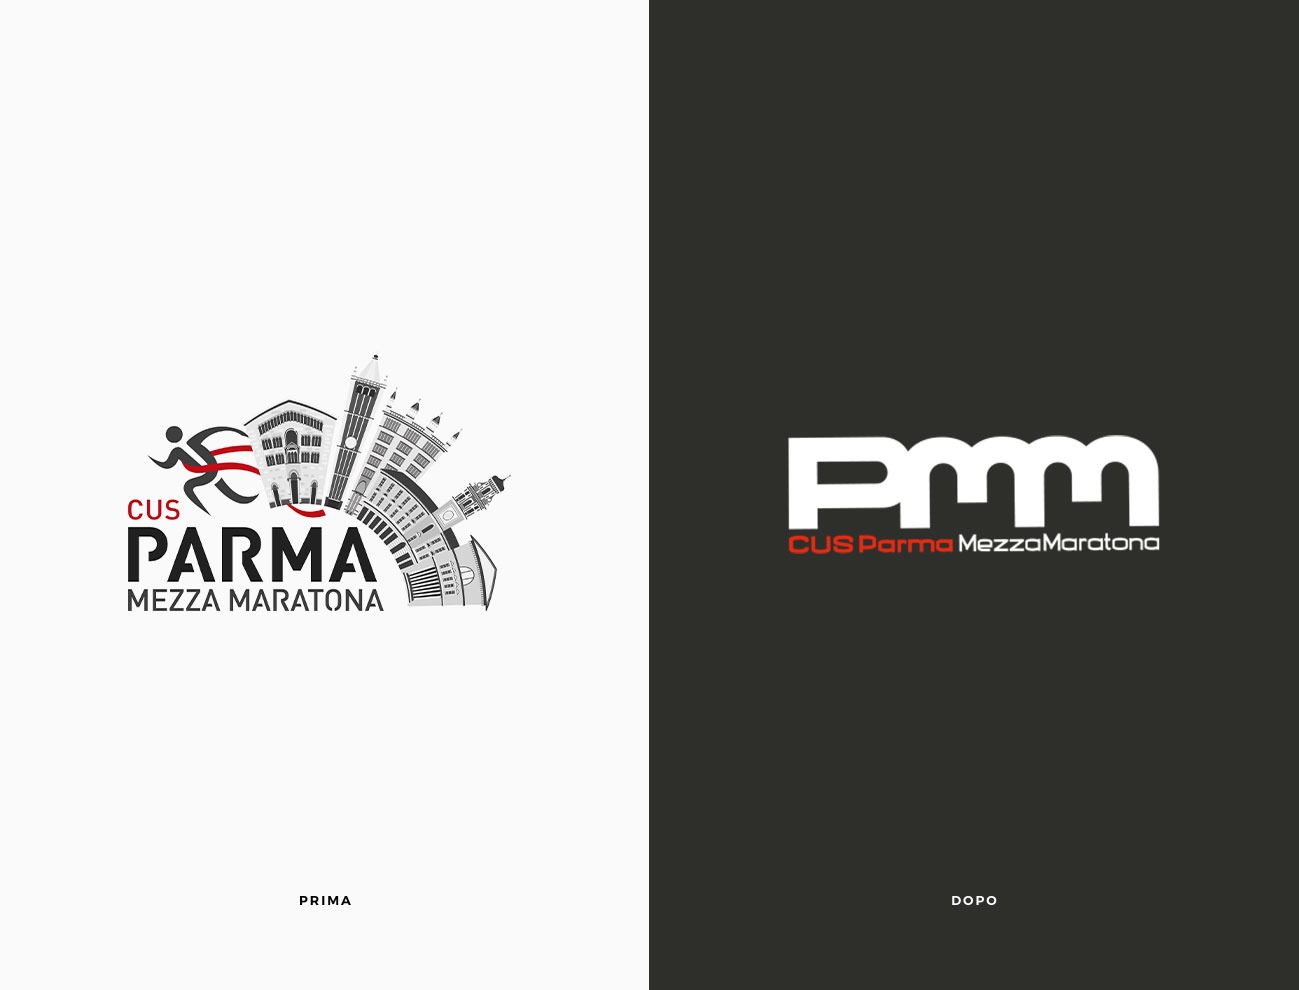 Parma Mezza Maratona logo